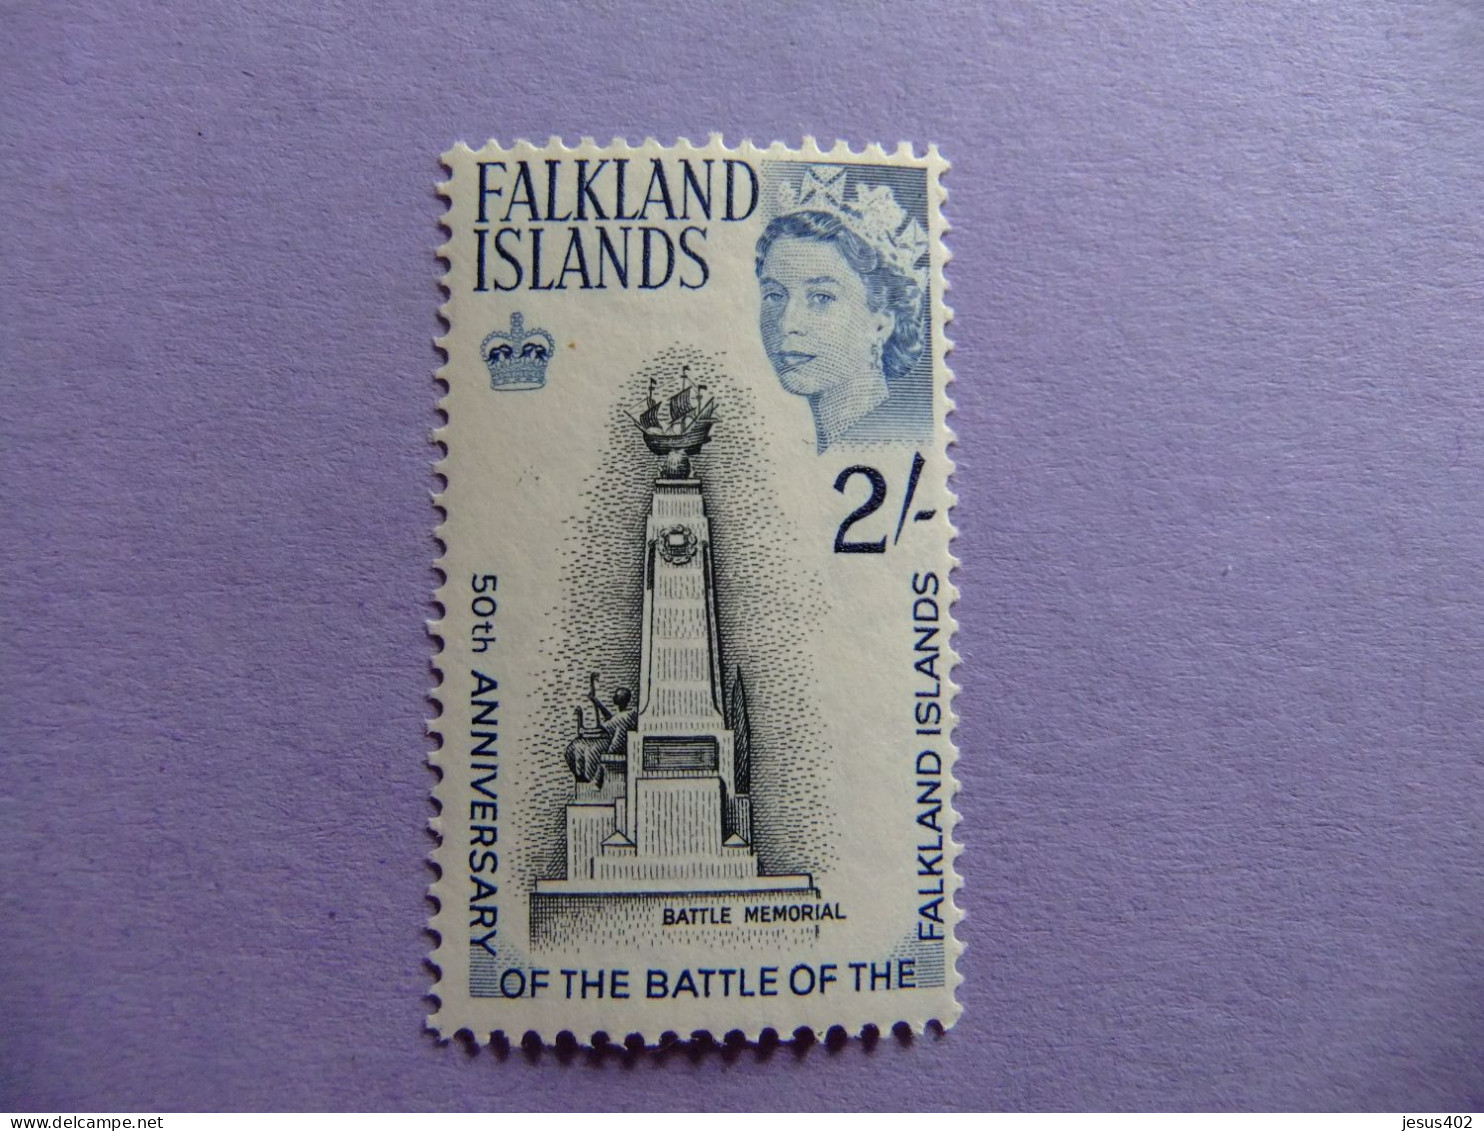 MALVINAS FALKLAND ISLANDS 1964 MEMORIAL DE LA BATALLA E FALKLAND YVERT 147 MNH - Malediven (...-1965)